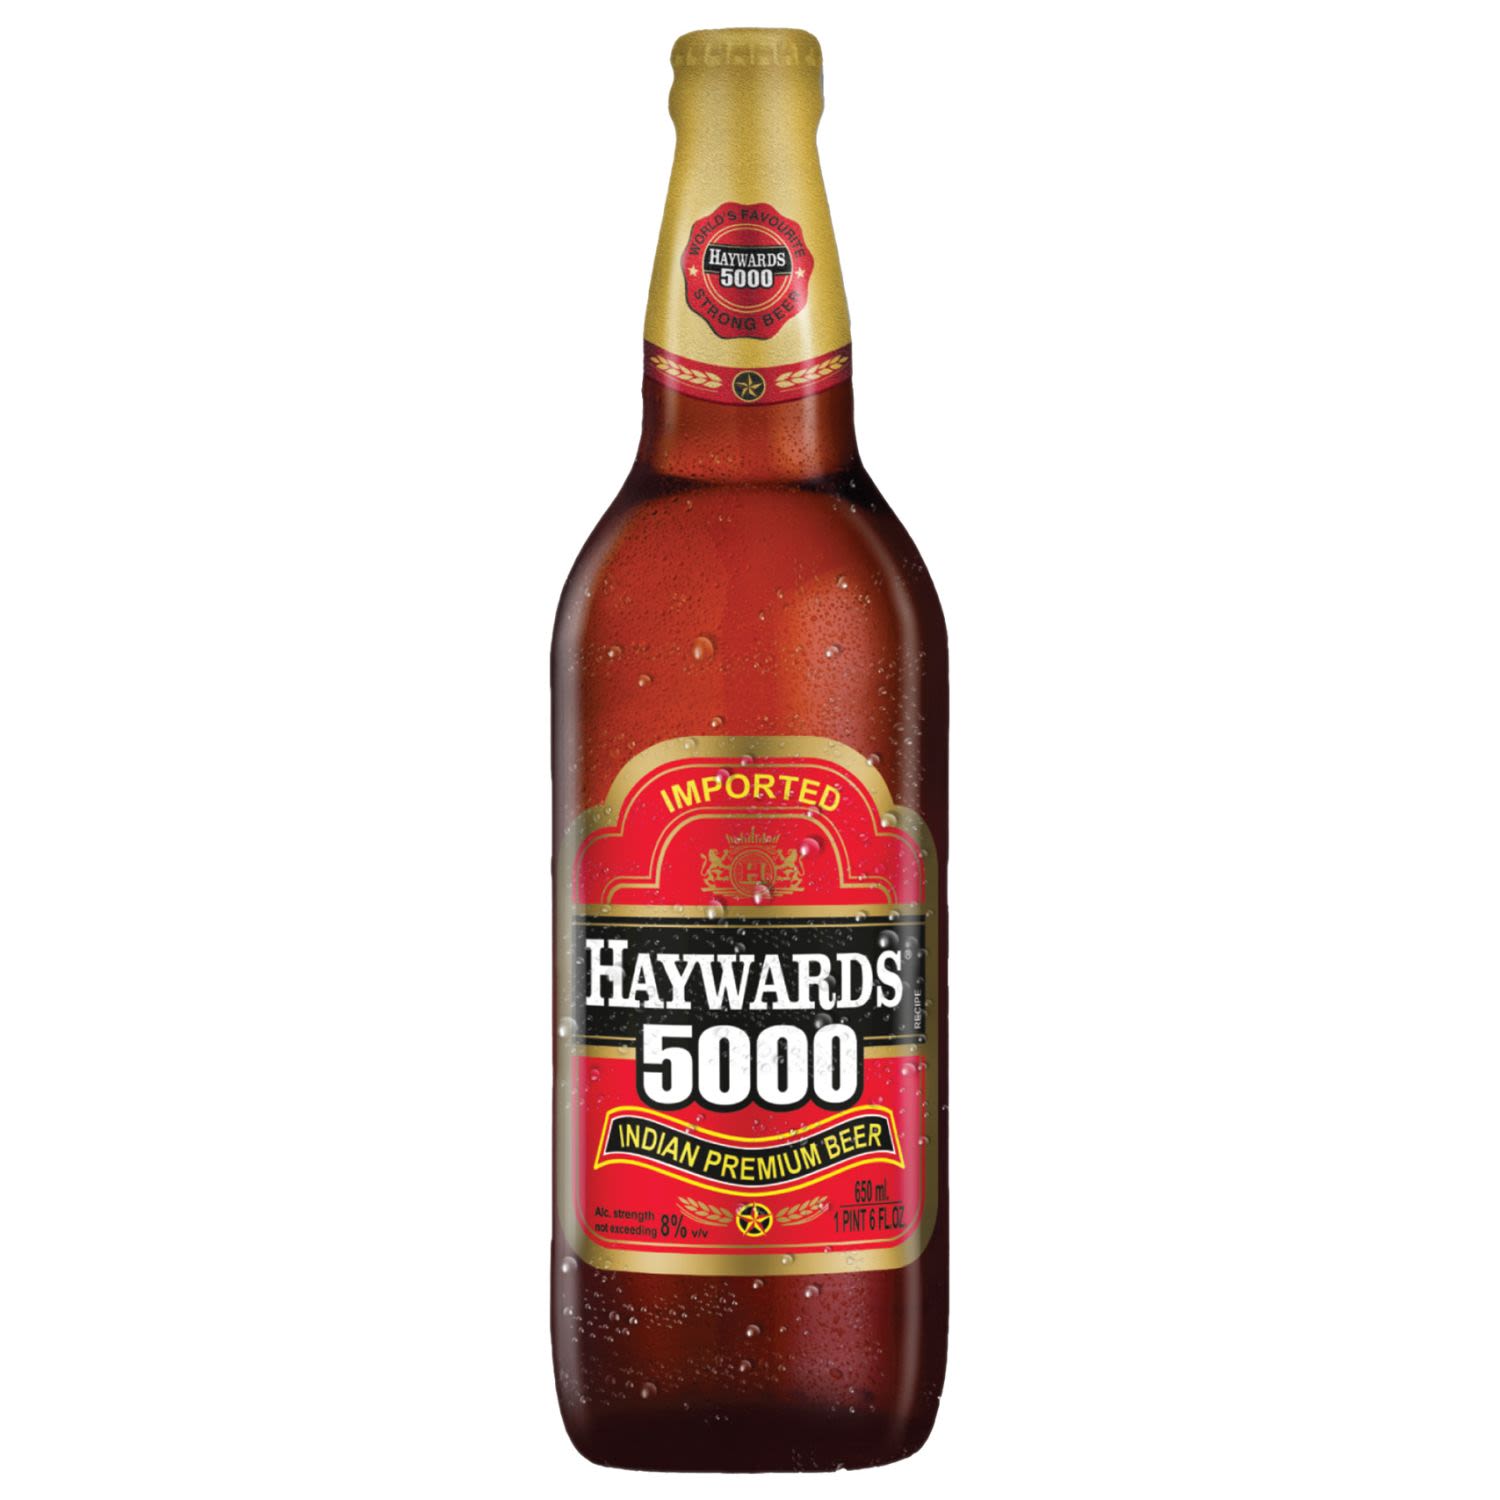 Haywards 5000 Indian Premium Beer 650mL Bottle